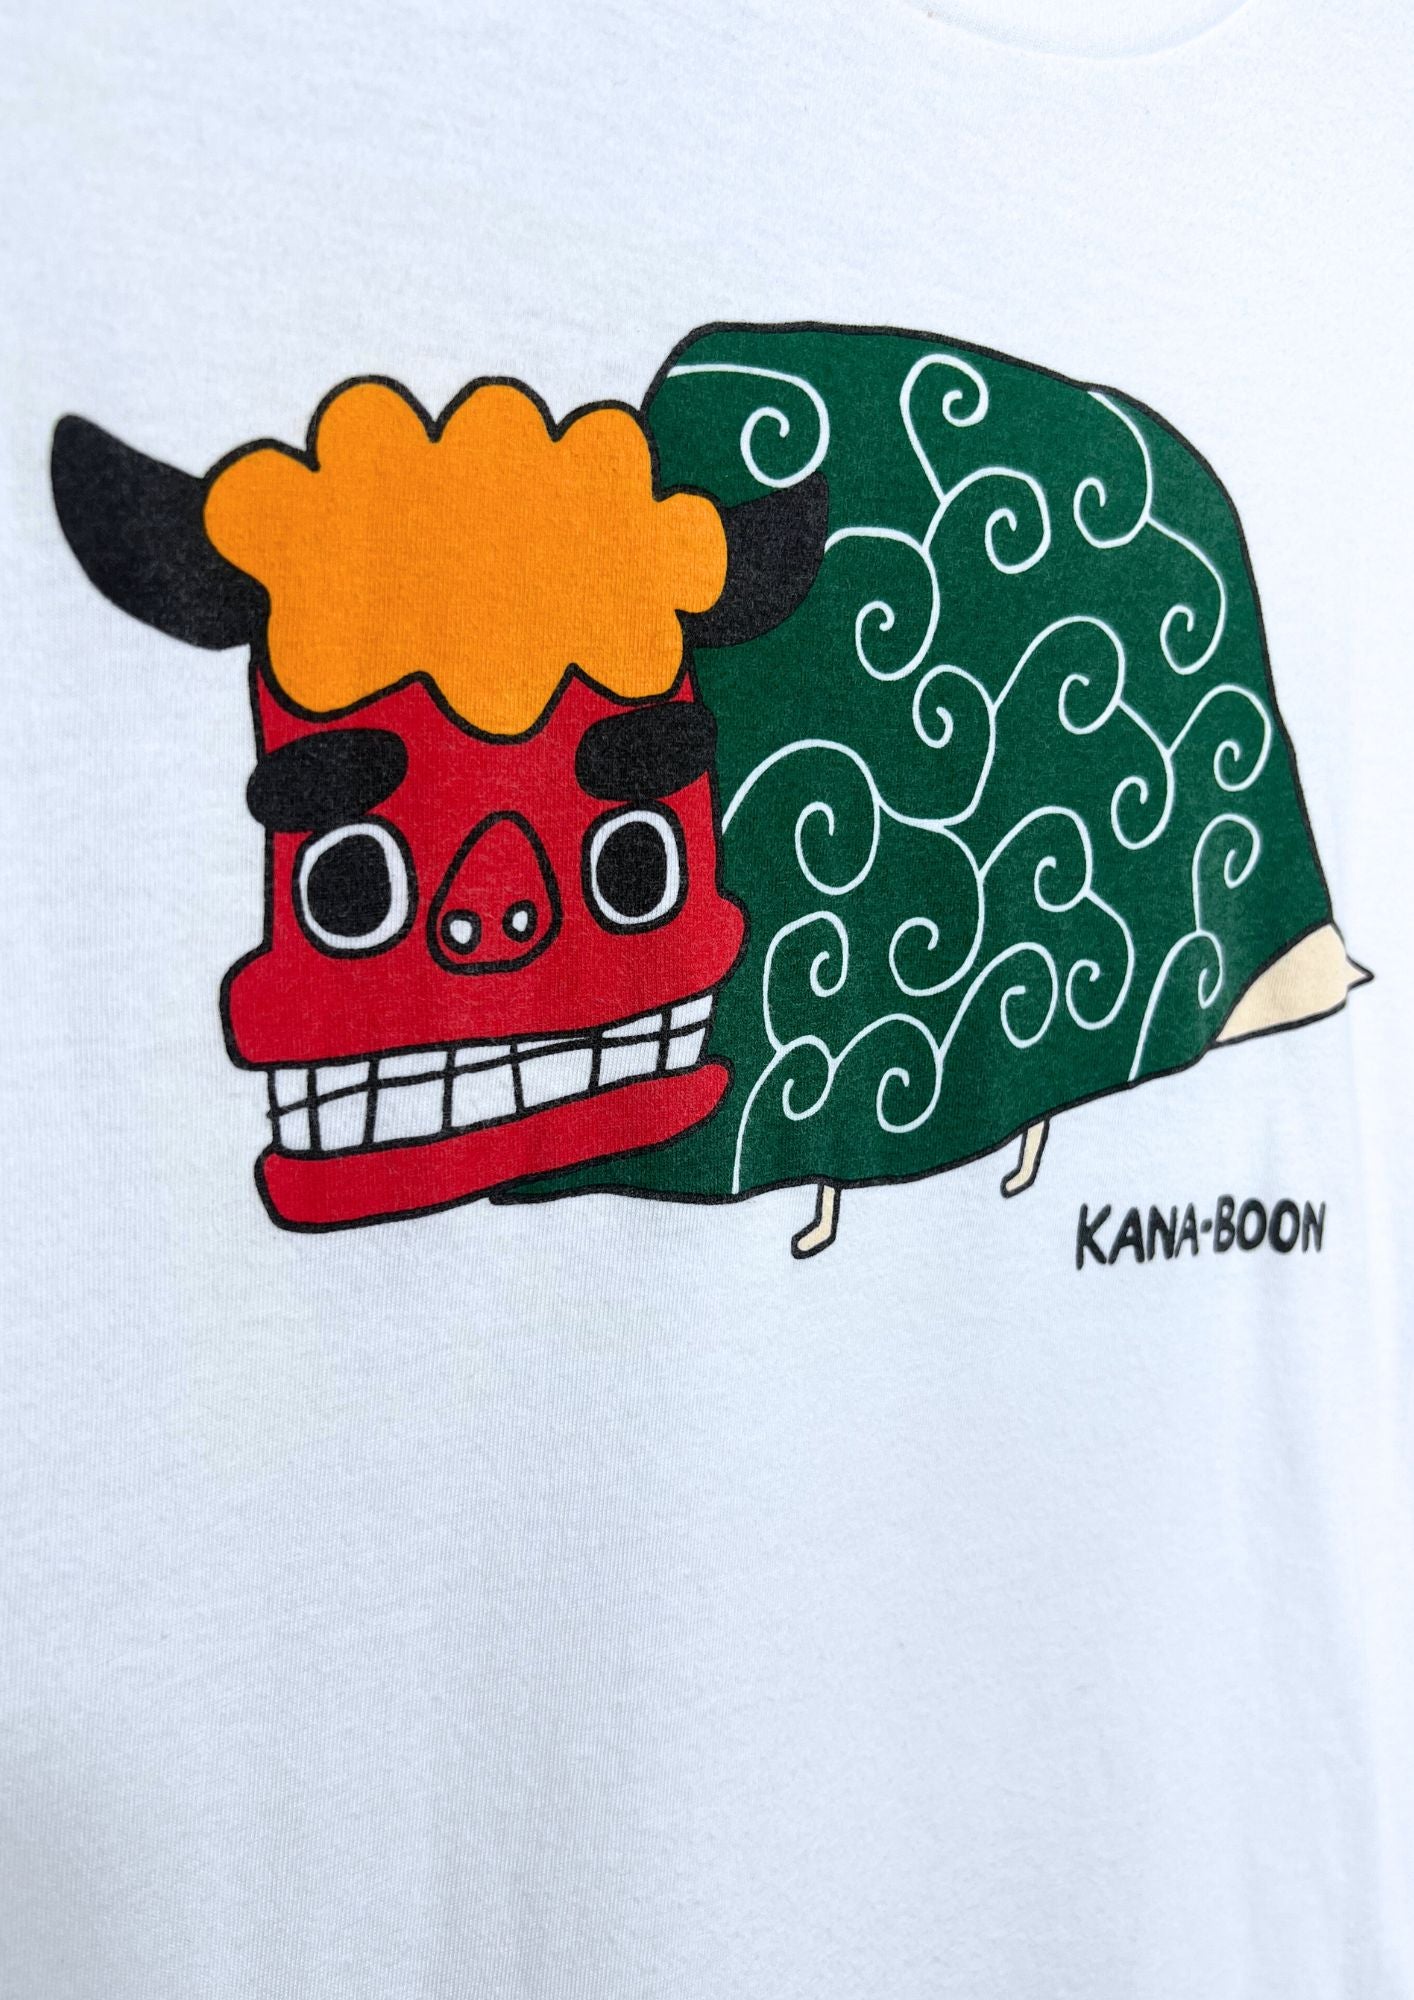 2014 KANA-BOON Japanese Rock Band  Shishimai T-shirt